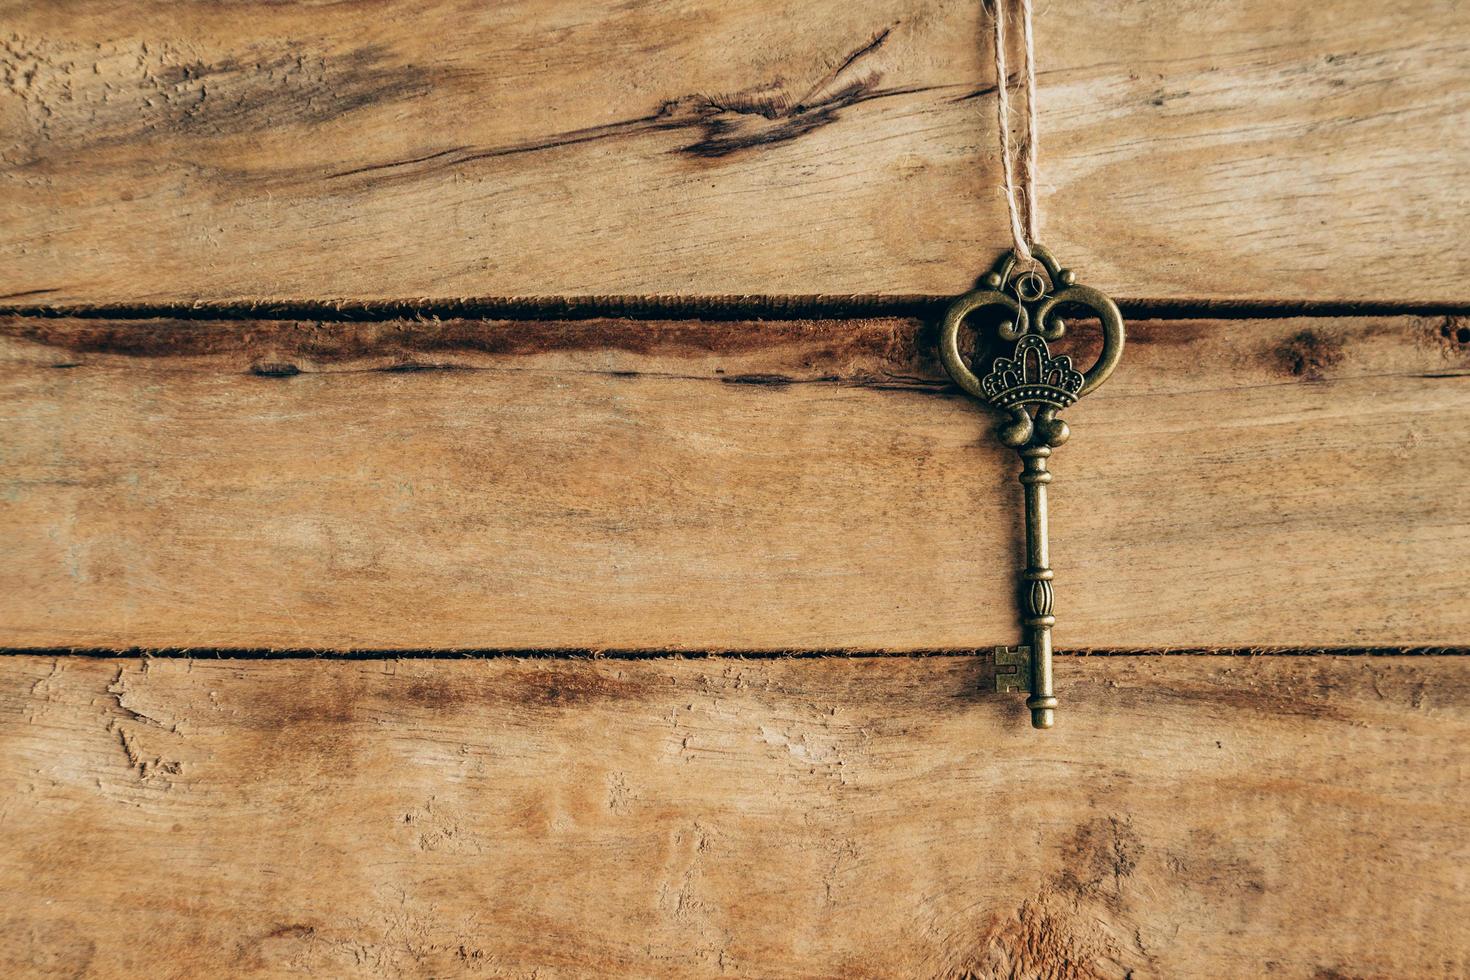 antiguo llave colgando en marrón madera con espacio. foto